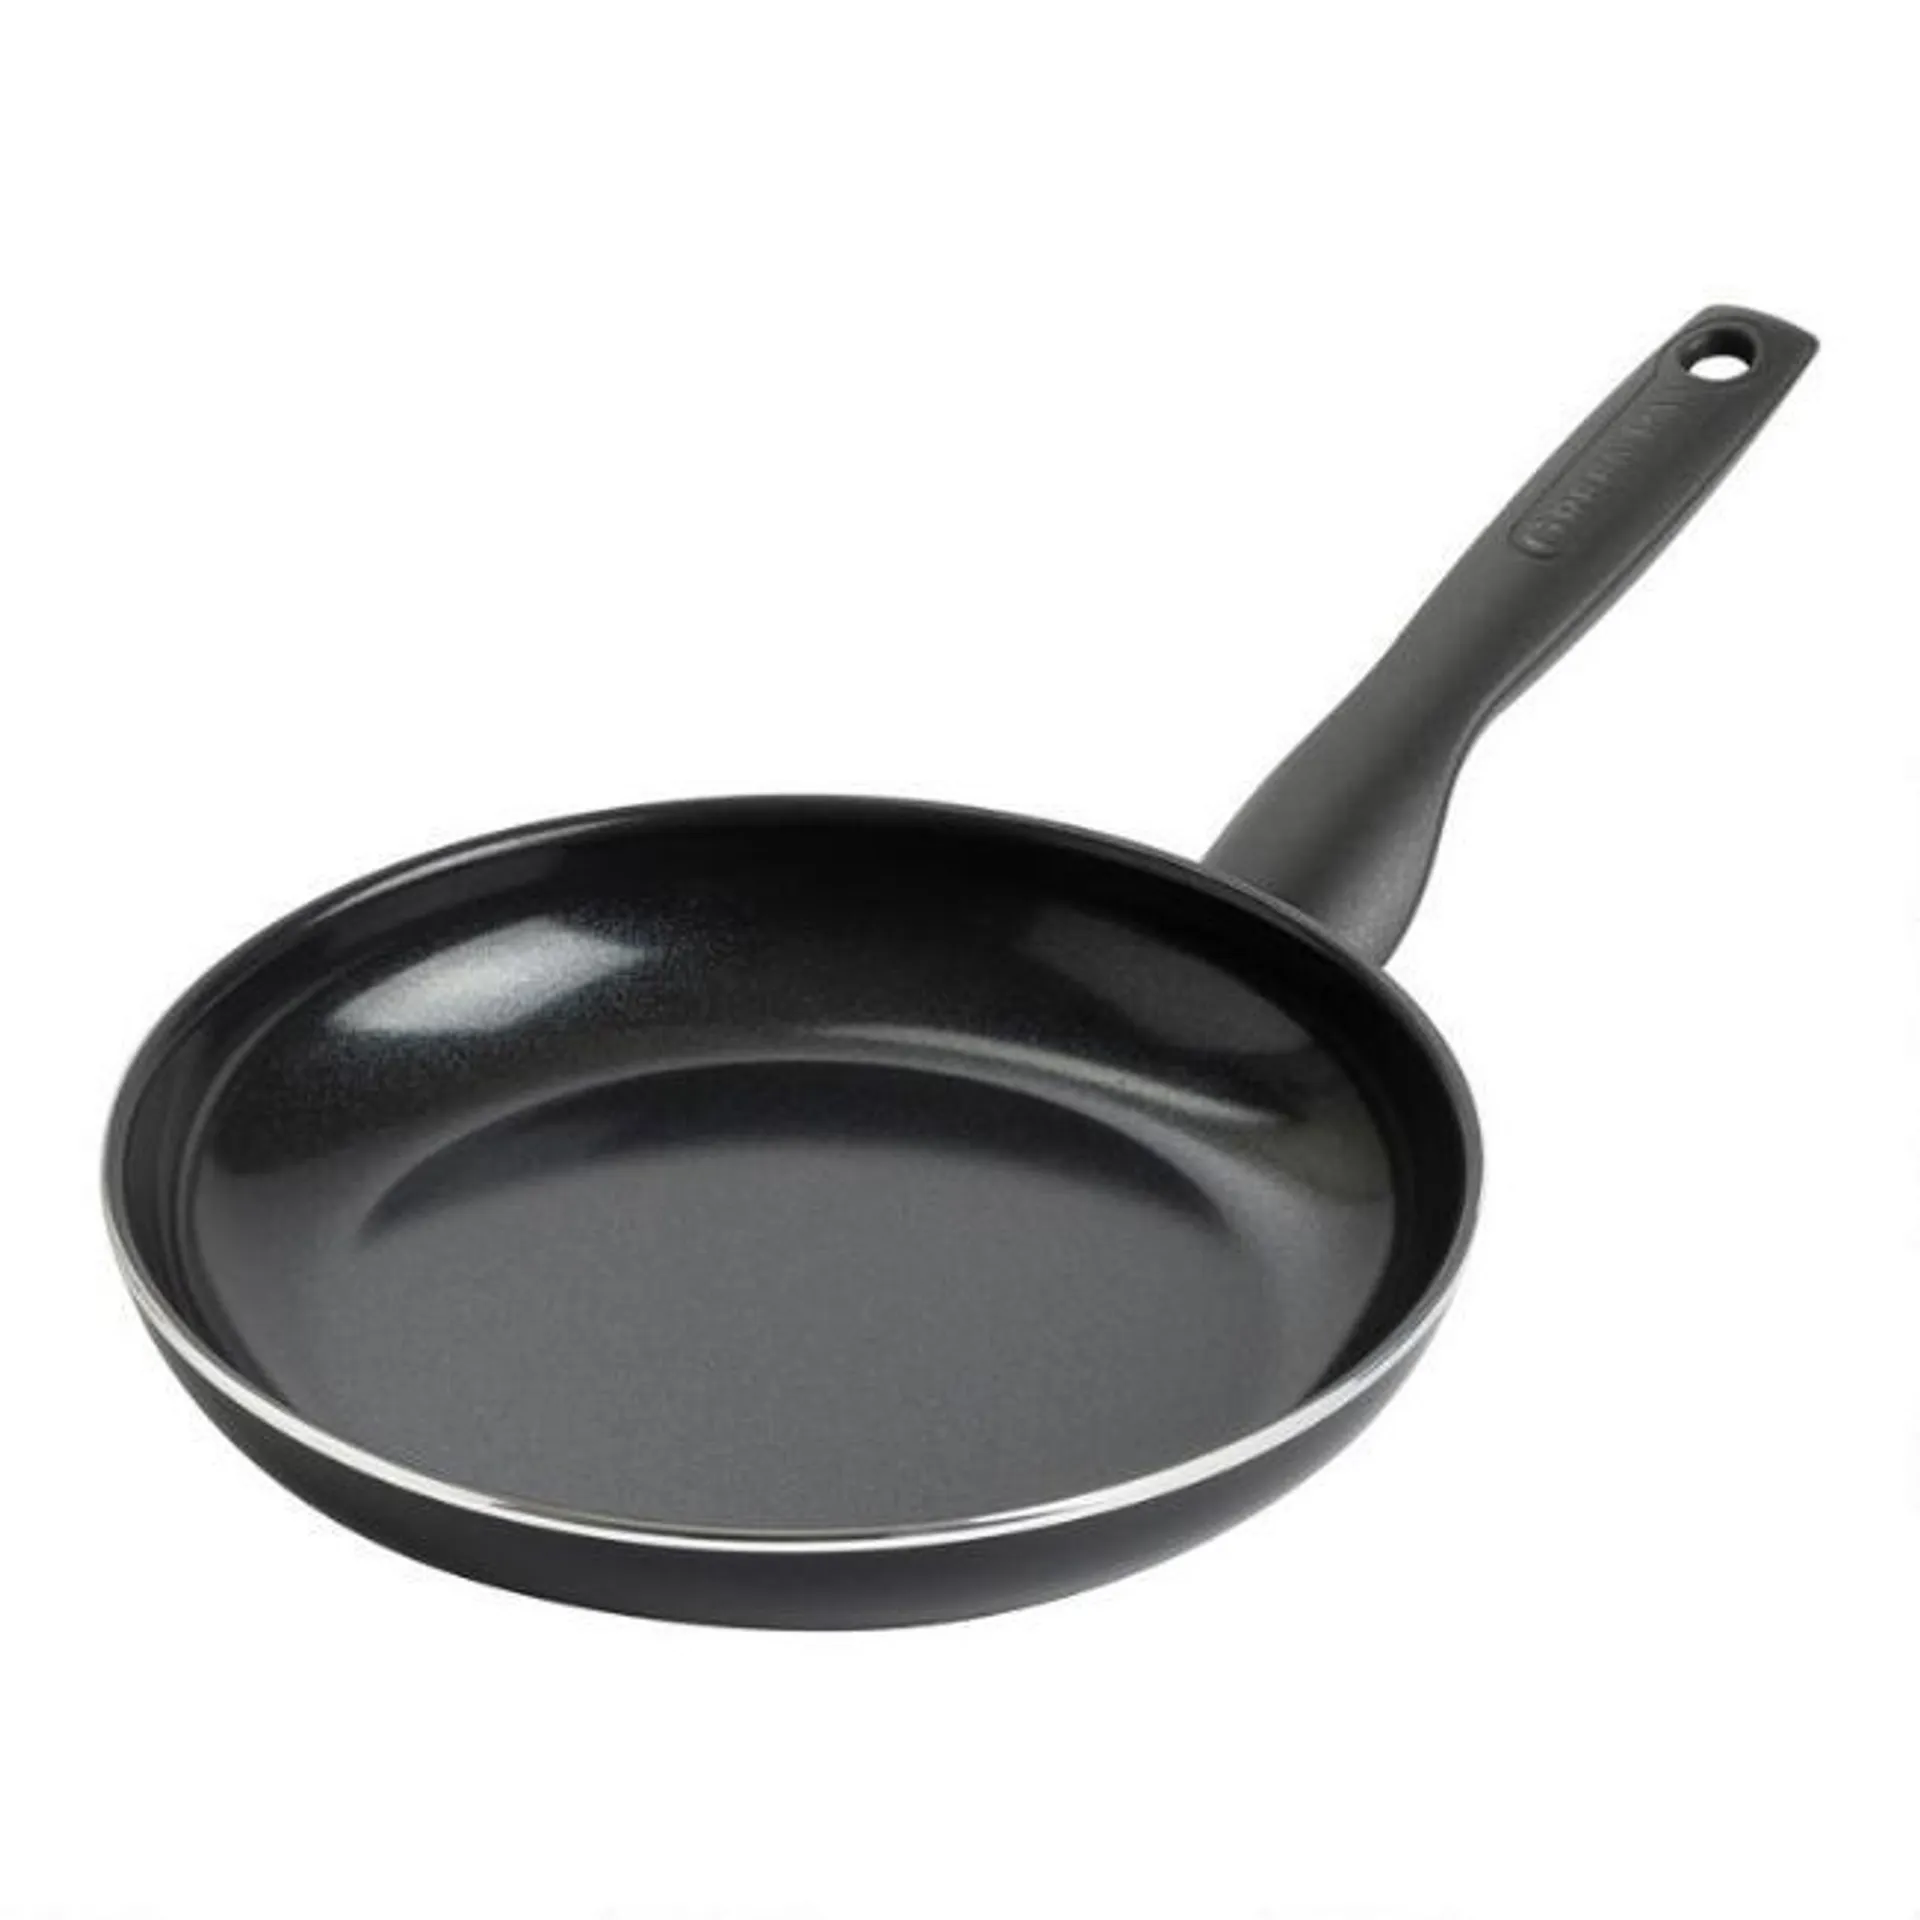 GreenPan Simply Easy Black Nonstick Ceramic Frying Pan